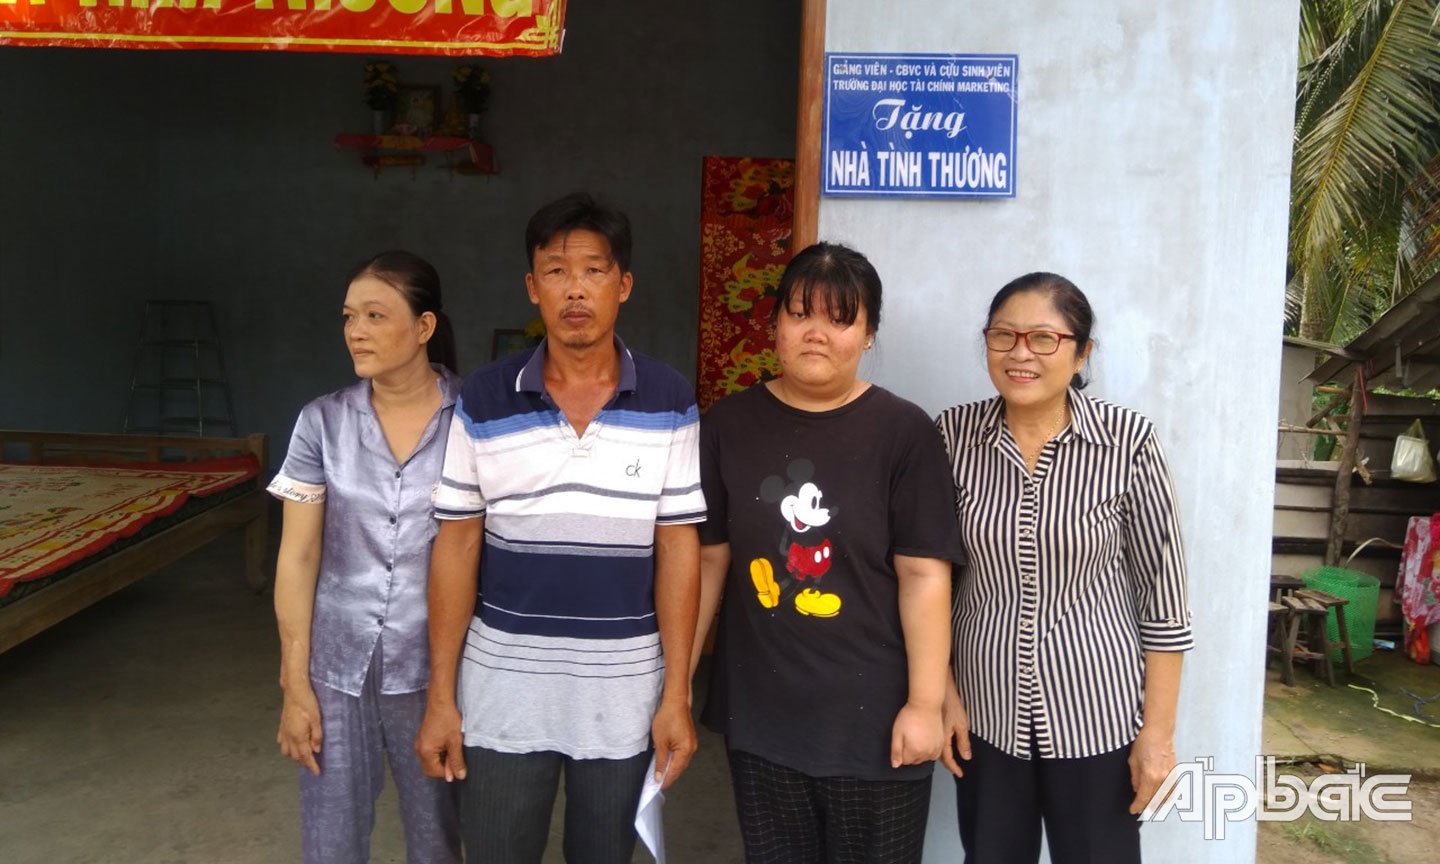 Hội NNCĐDC tỉnh Tiền Giang trao nhà tình thương cho gia đình NNCĐDC  có hoàn cảnh khó khăn tại huyện Châu Thành. 